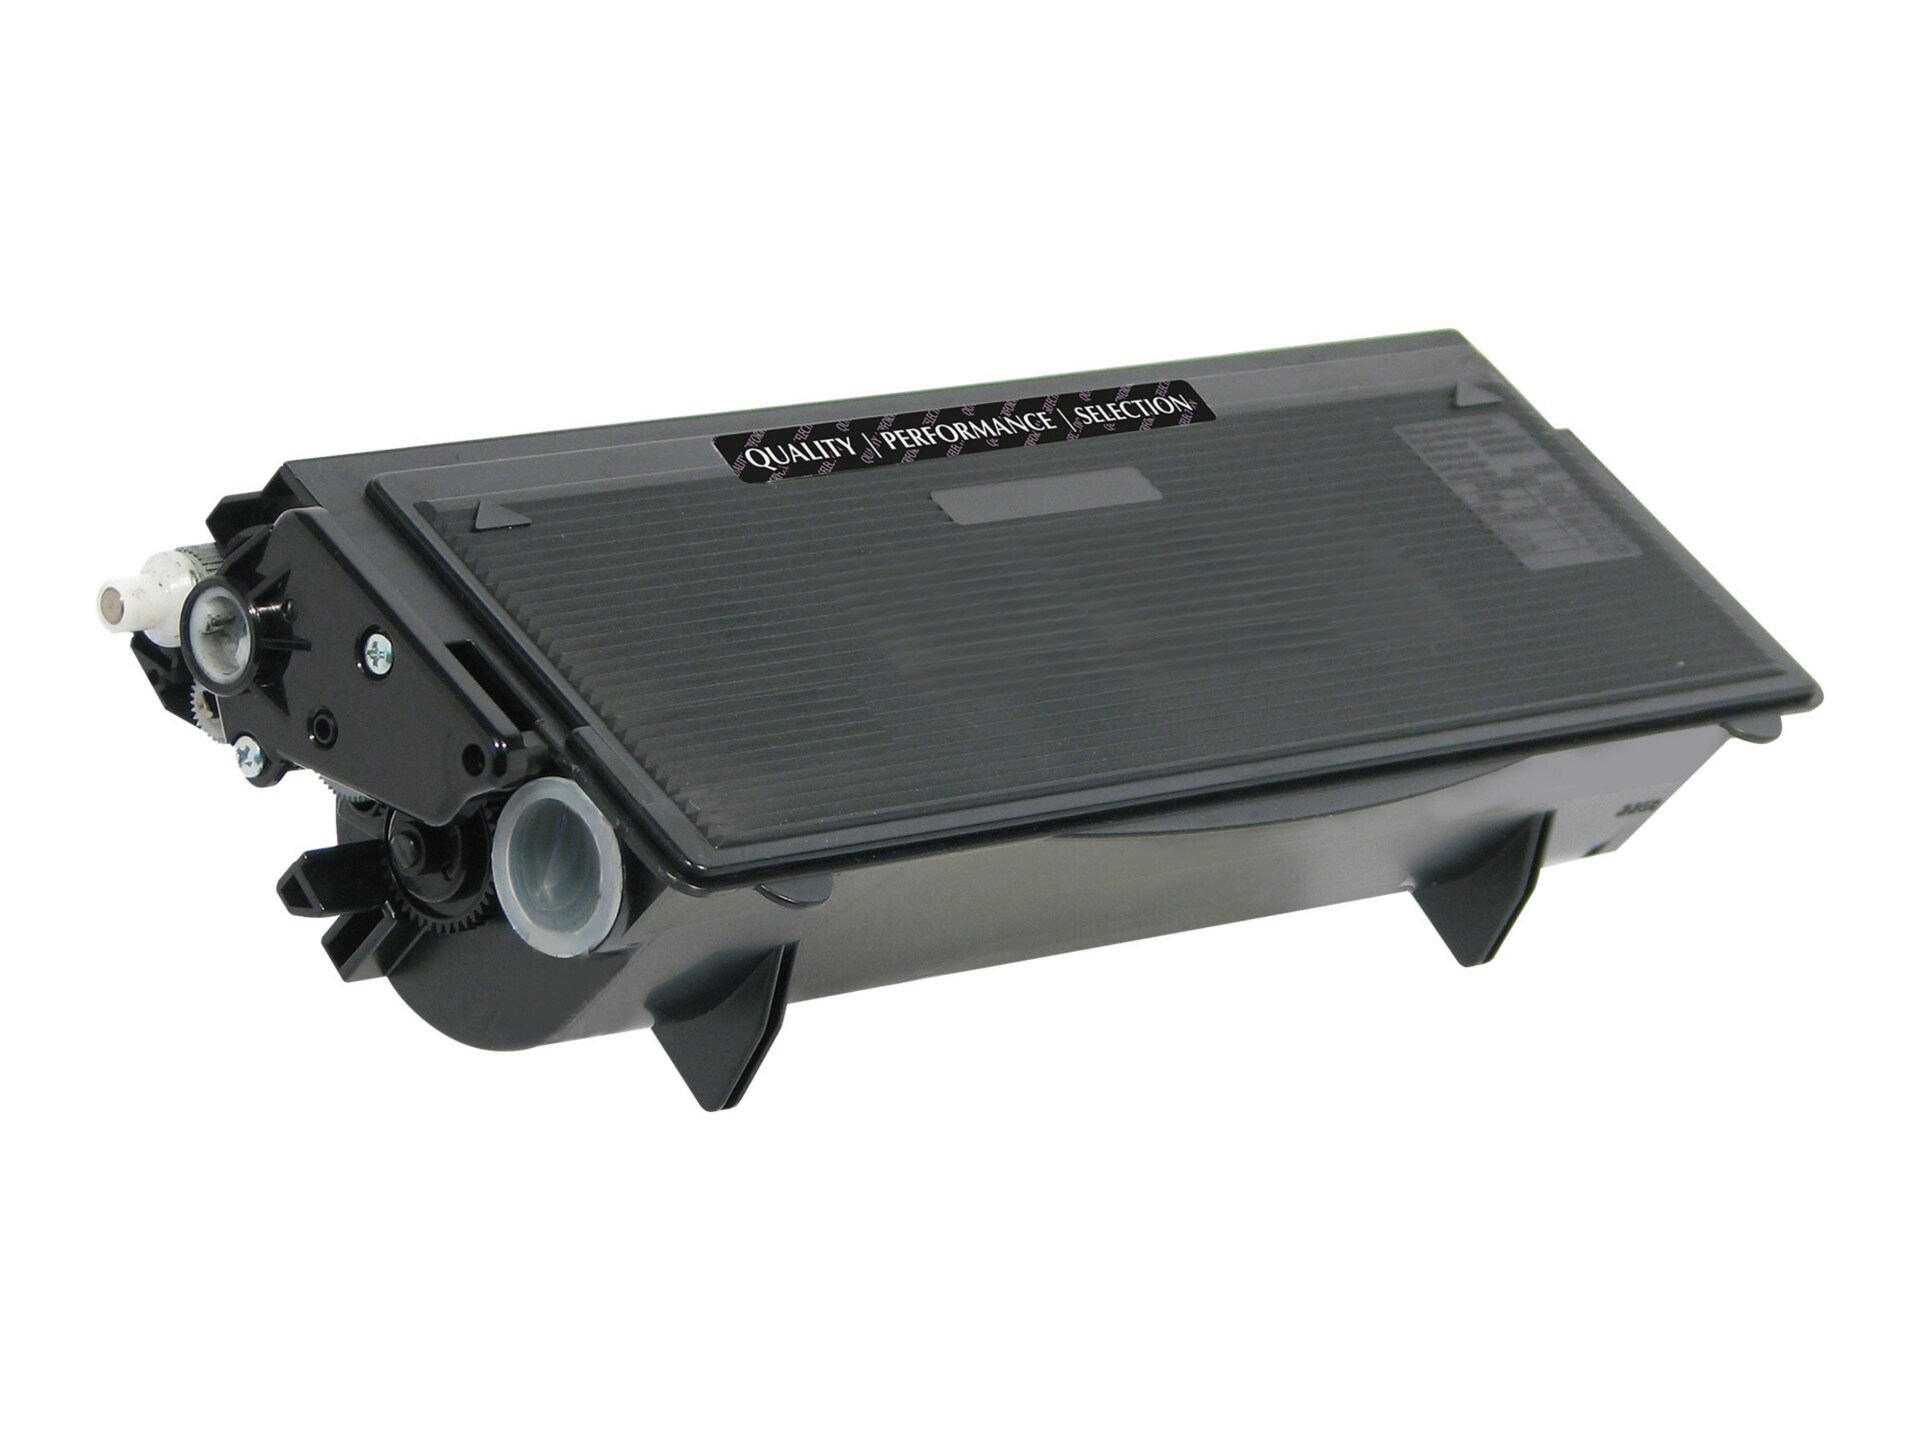 Clover Imaging Group - black - remanufactured - toner cartridge (alternativ